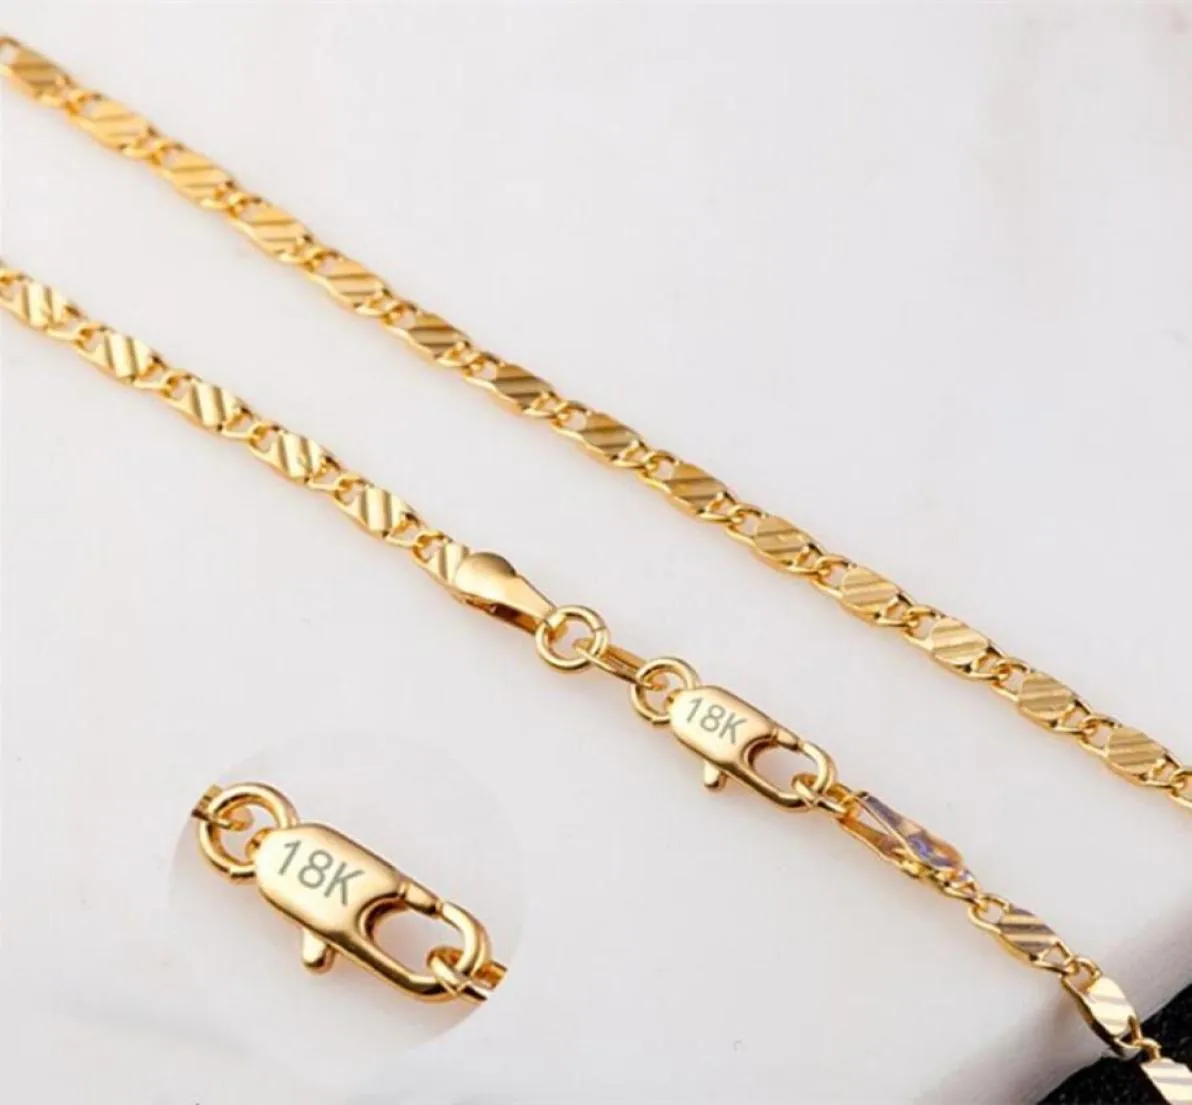 2mm Flache Ketten Mode Luxus Frauen Schmuck 18K Gold Überzogene Halskette Kette Herren 925 Silber Überzogene Ketten Halsketten Geschenke DIY Acce5154646